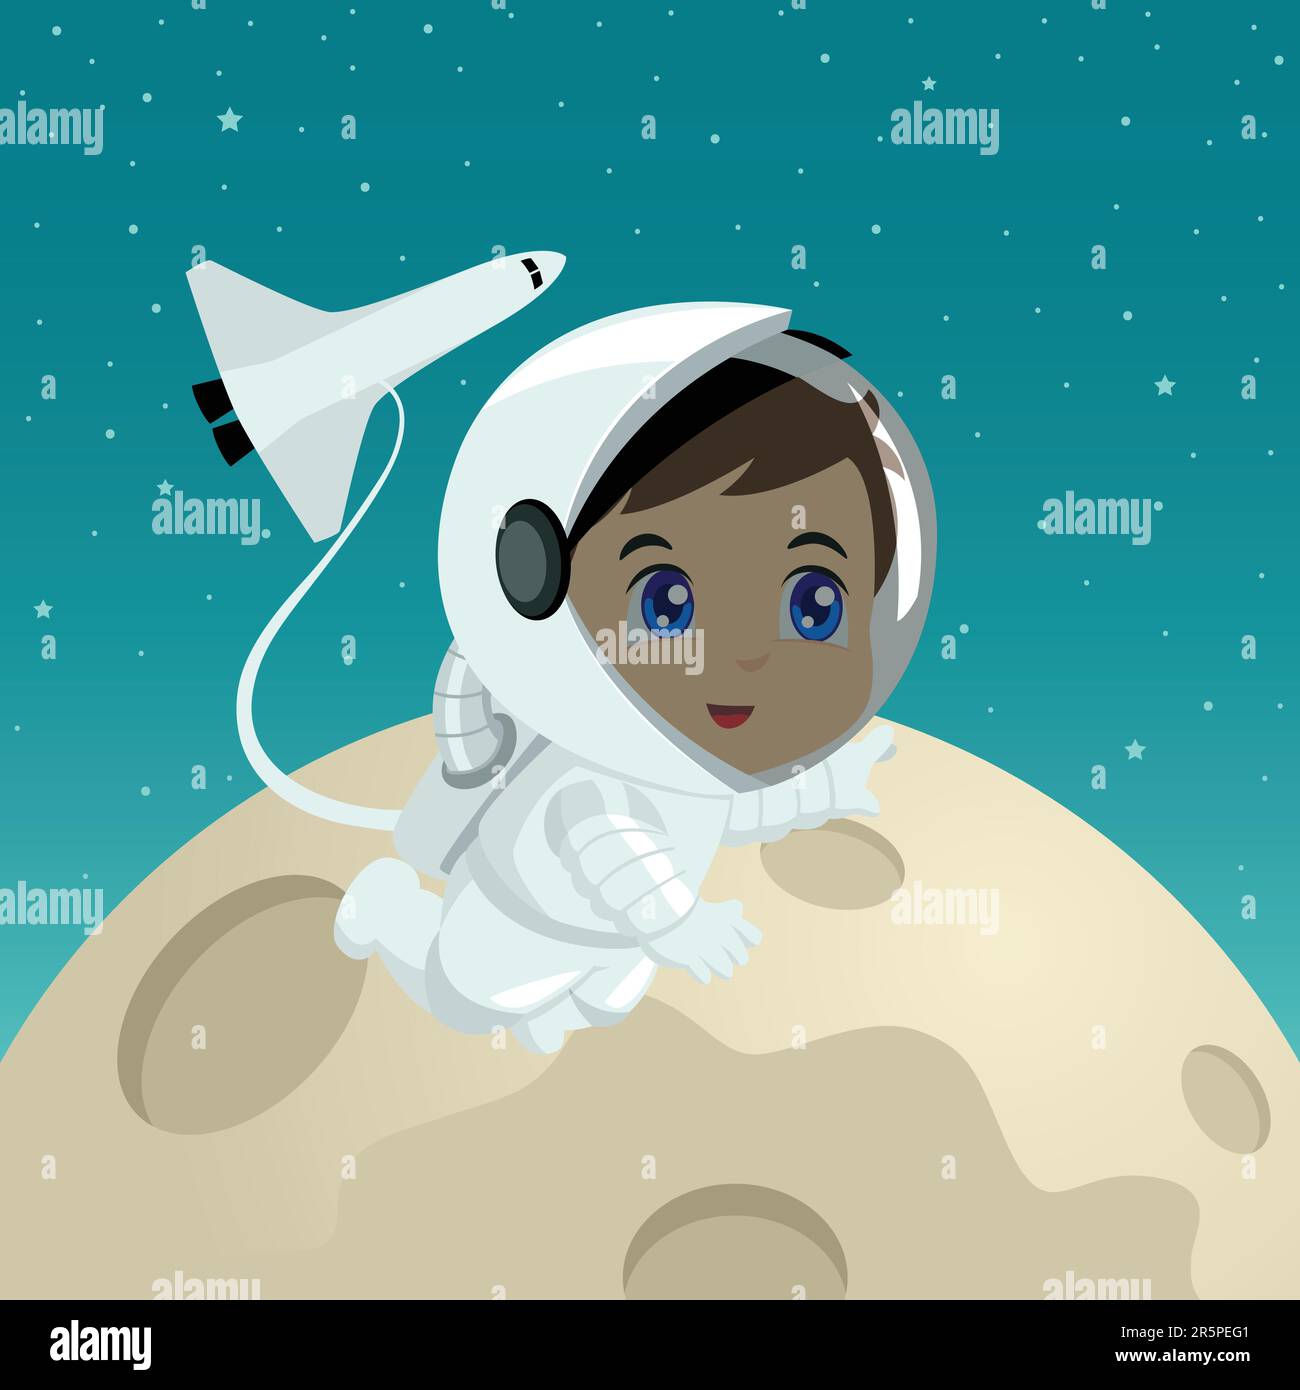 Cartoon illustration of an astronaut on the moon surface Stock Vector